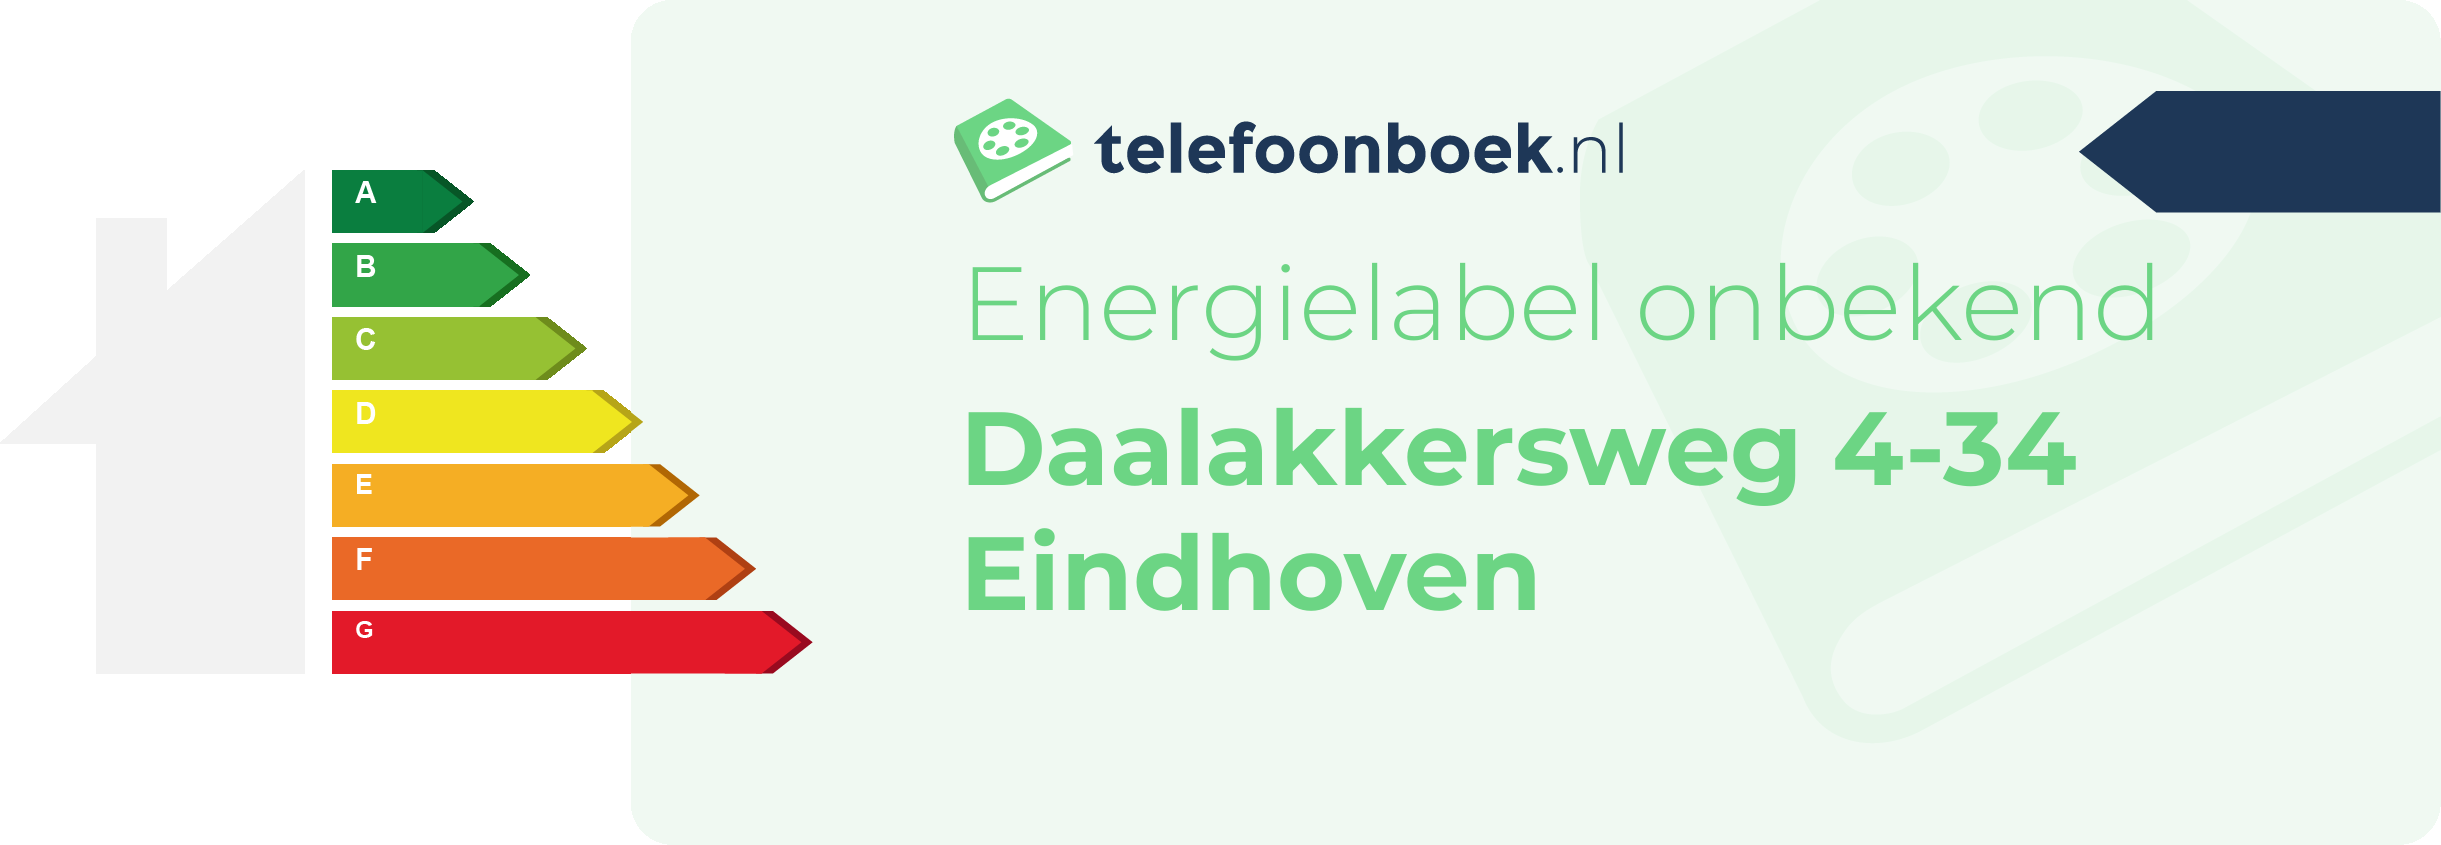 Energielabel Daalakkersweg 4-34 Eindhoven